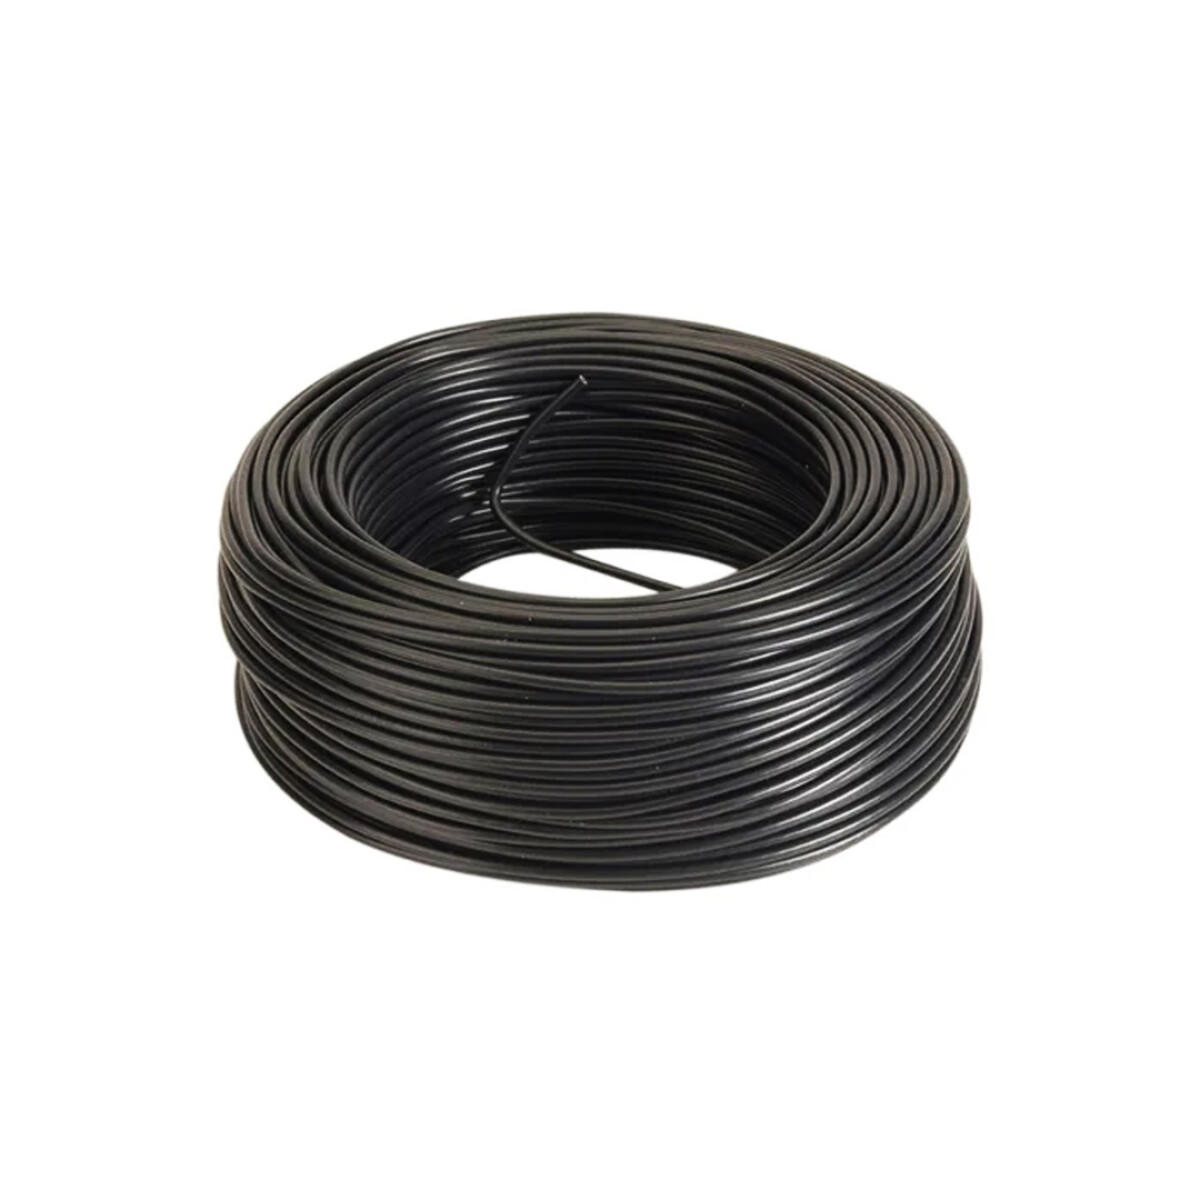 Cable XLPE Cobre - 10 mm 